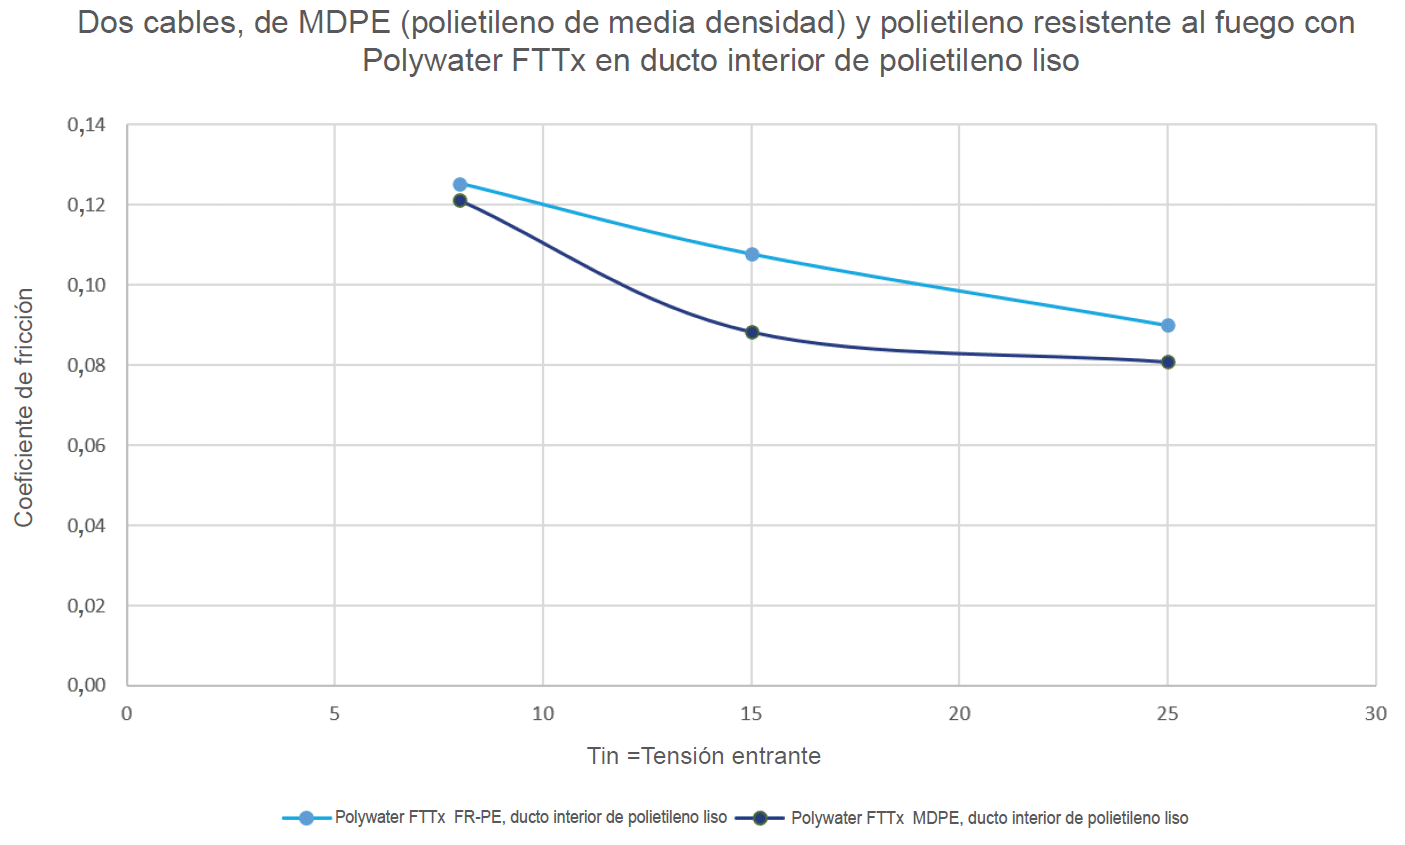 Comparación gráfica del MDPE (polietileno de media densidad) y del polietileno resistente al fuego